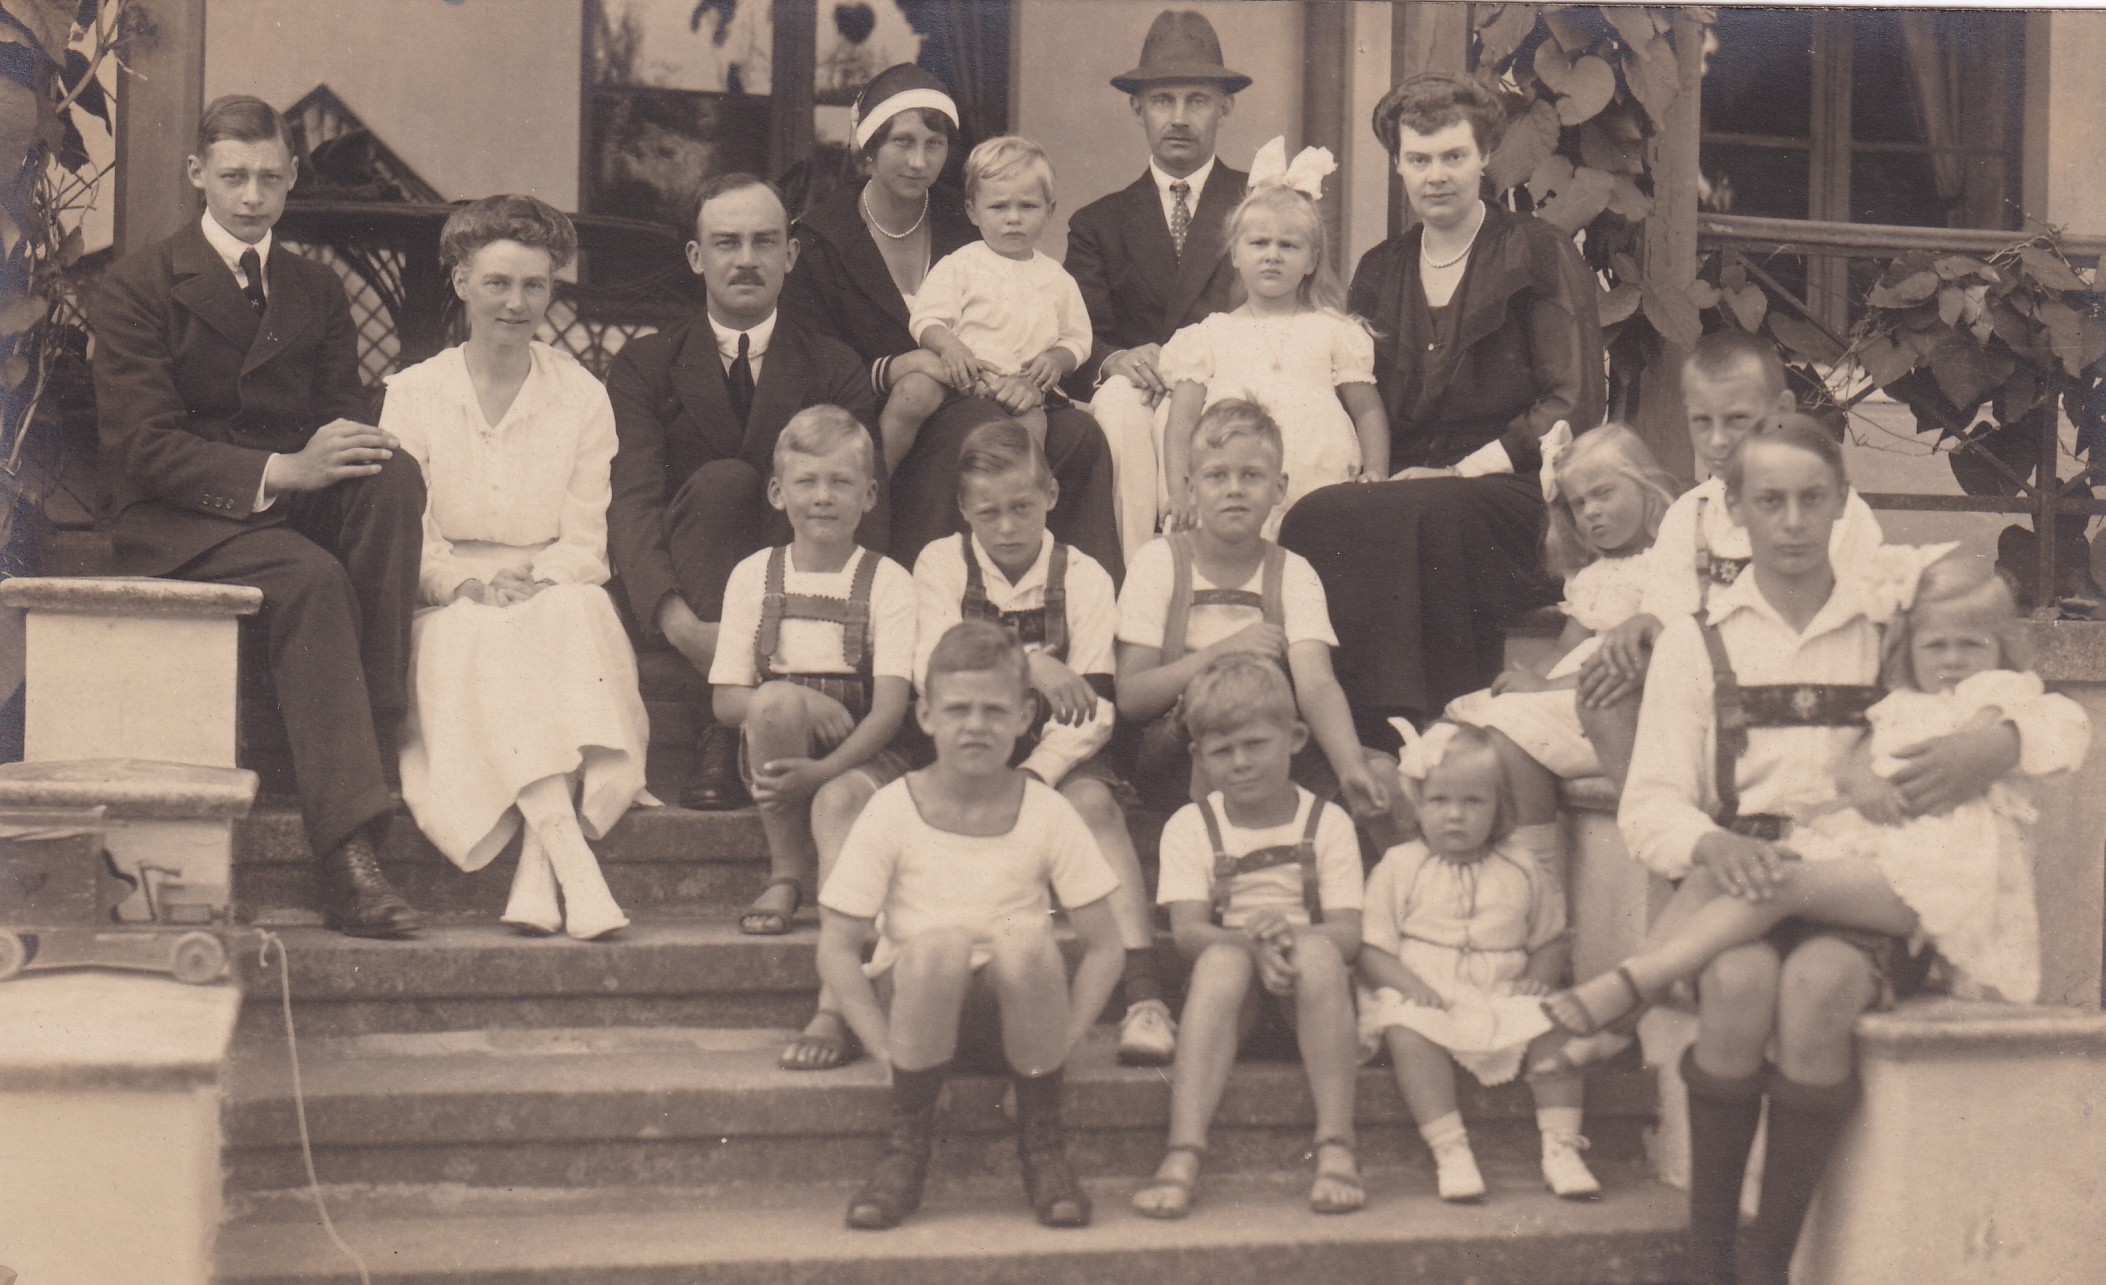 Bildpostkarte mit Gruppenfoto von Mitgliedern der Familien Mecklenburg, Preußen und Braunschweig in Heiligendamm, 1921 (Schloß Wernigerode GmbH RR-F)